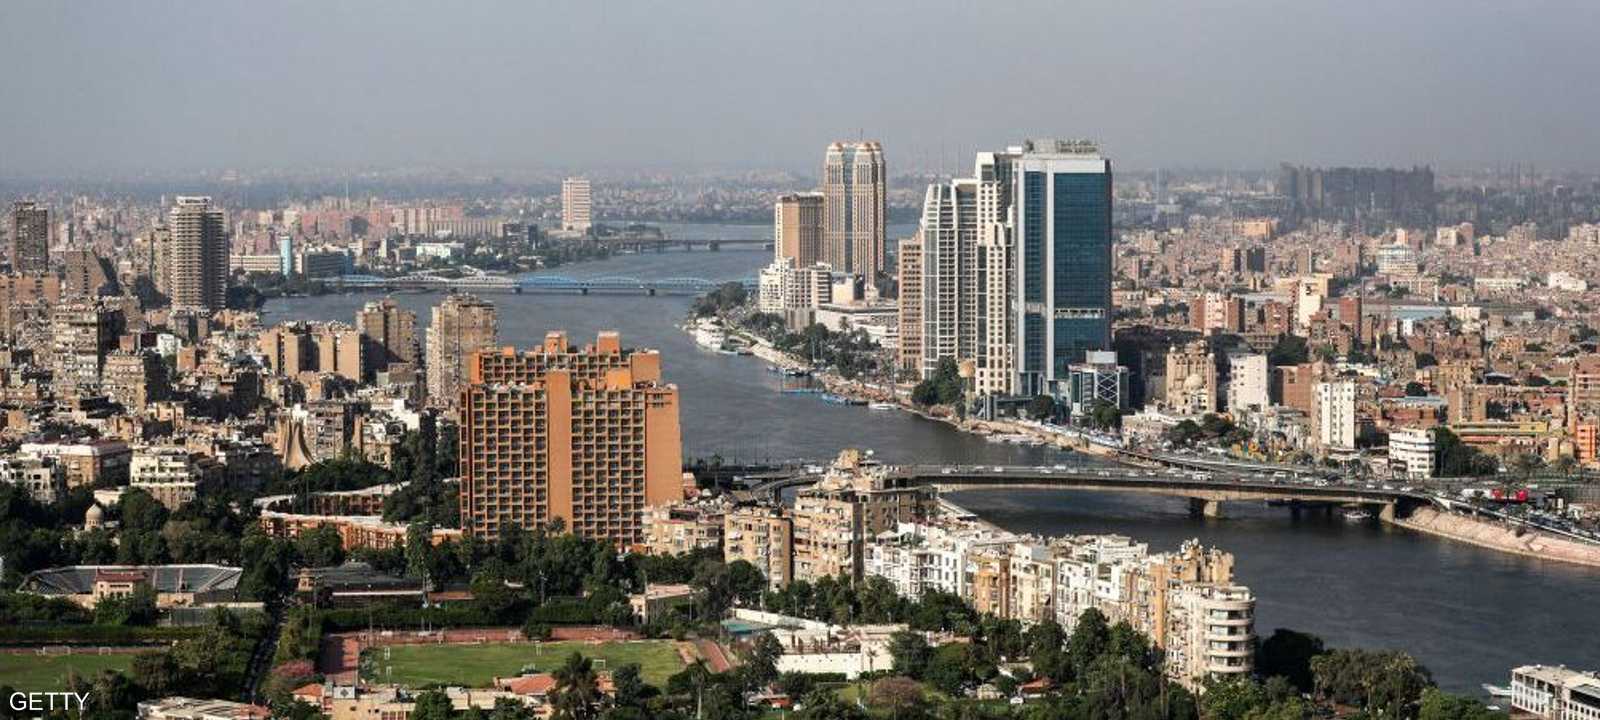 مصر تستهدف جذب مزيد من المستثمرين